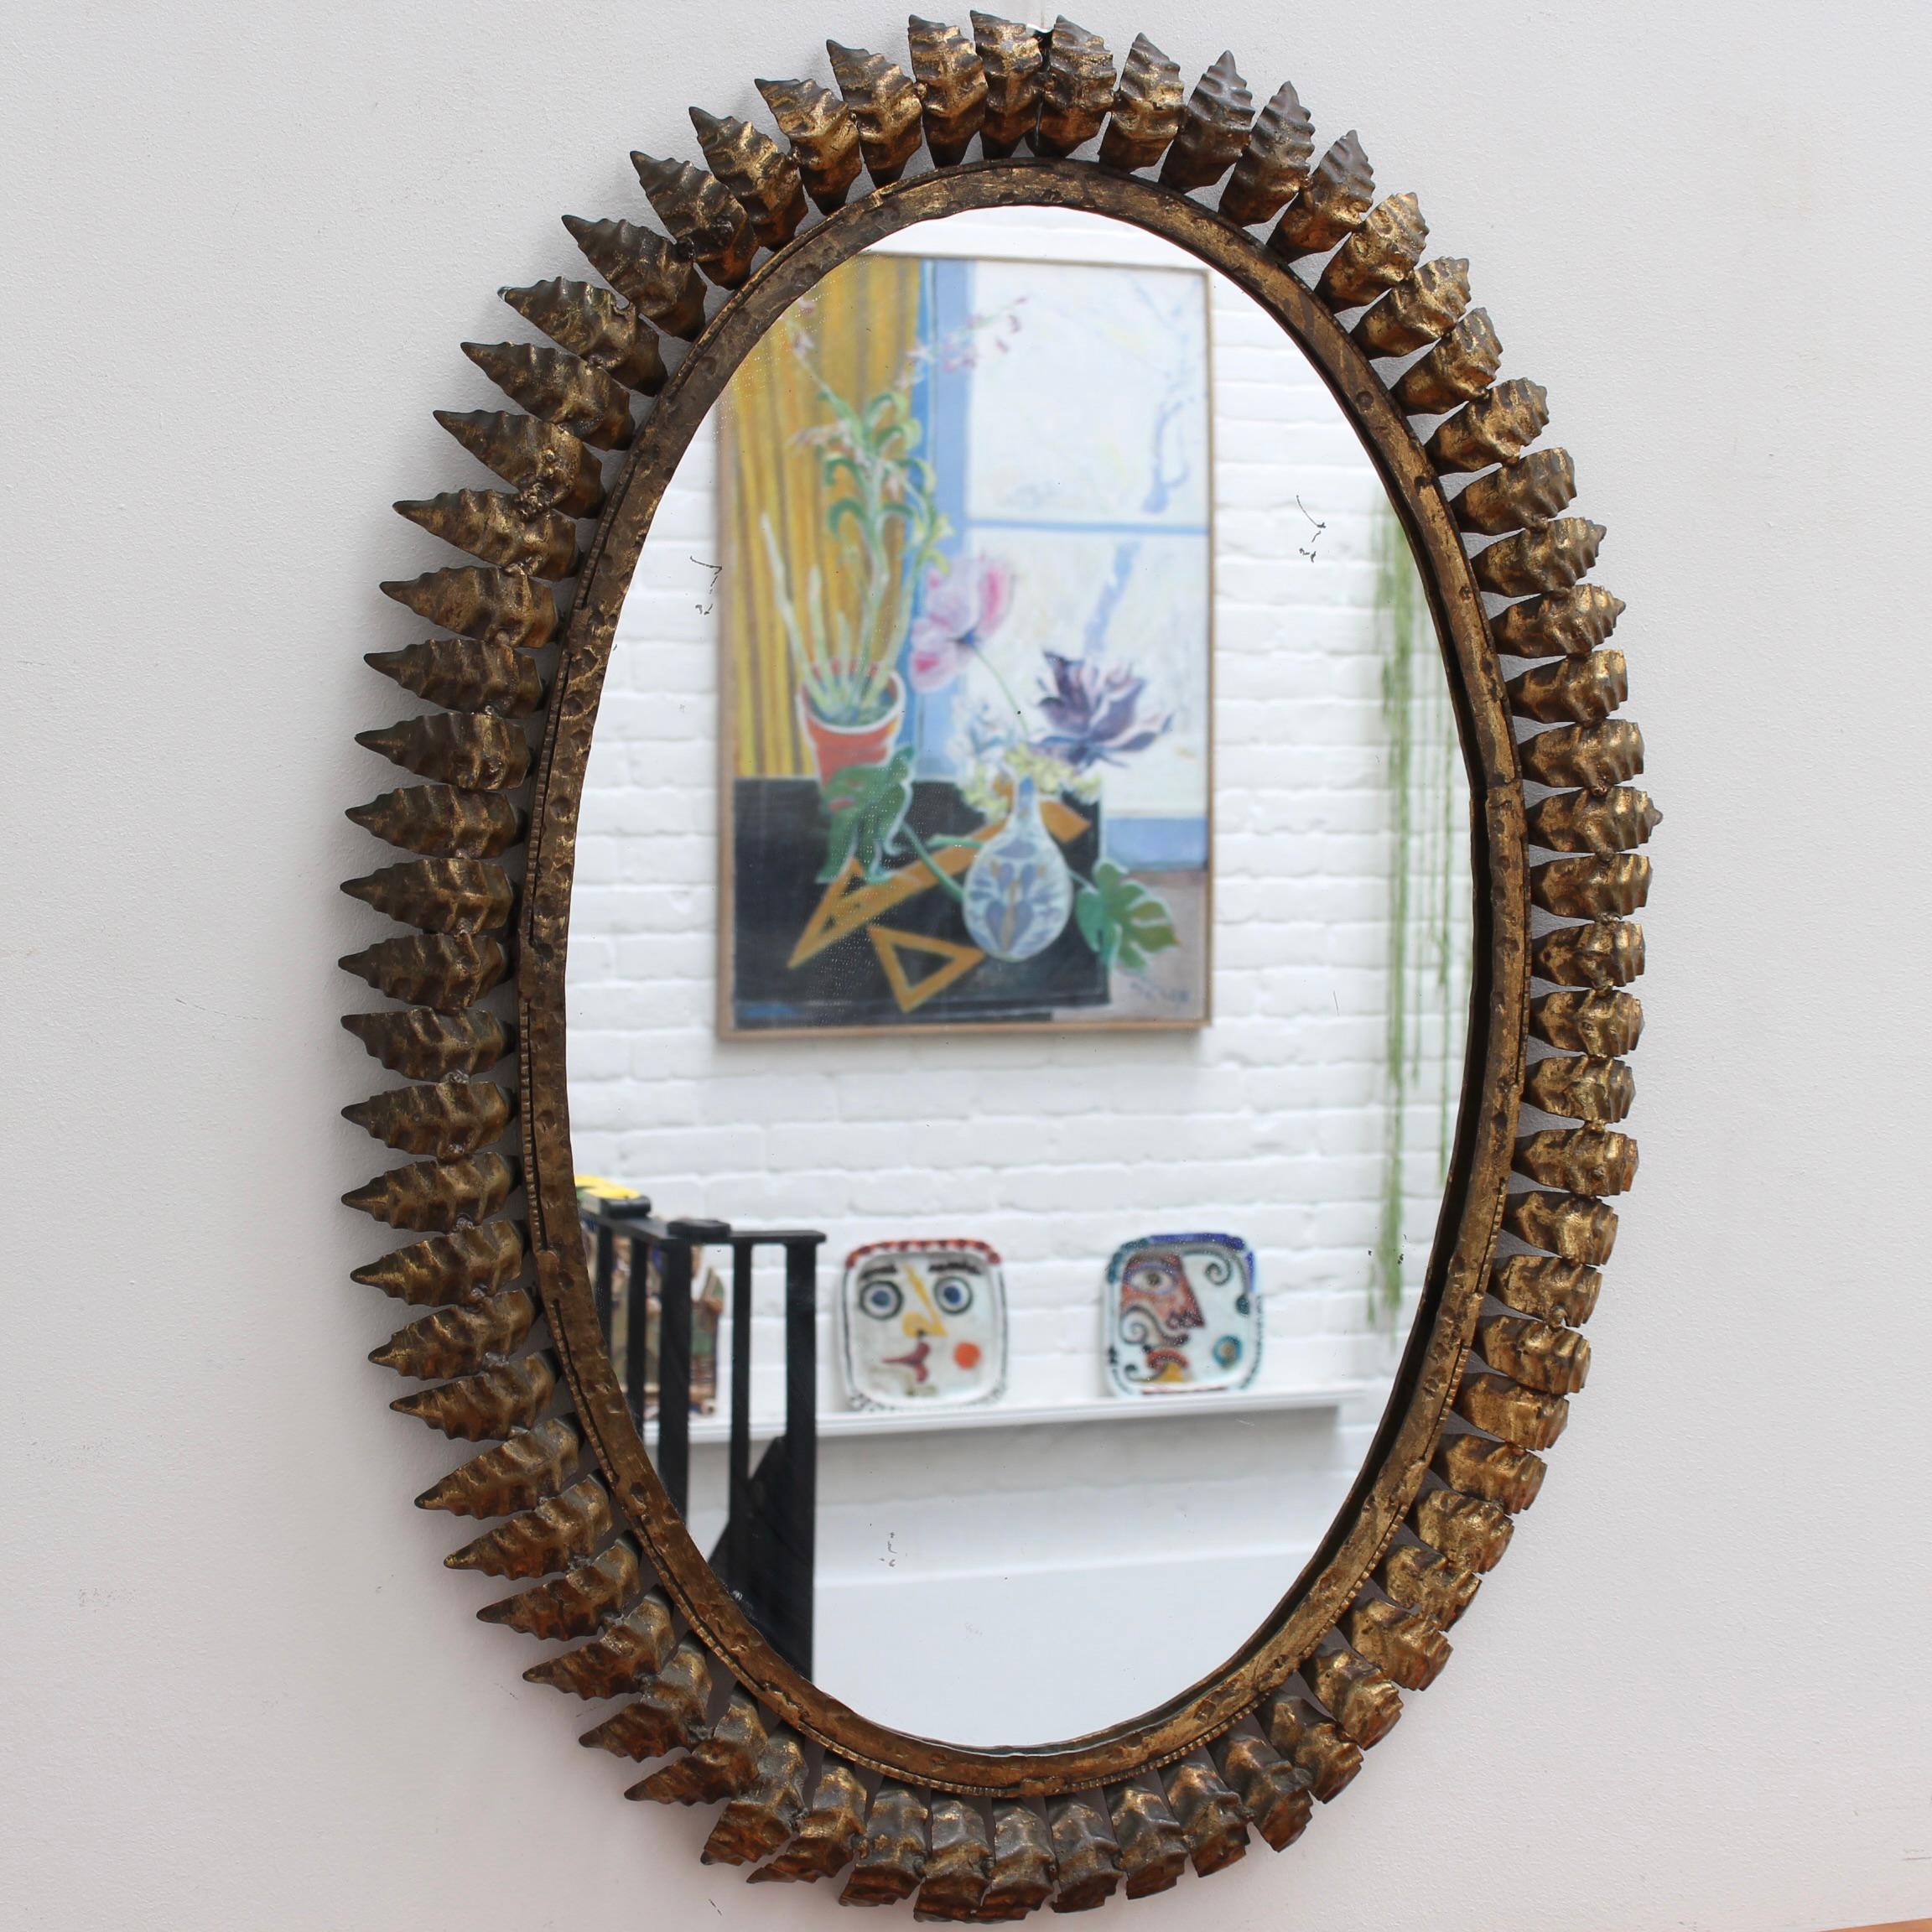 Spanischer Spiegel mit Sonnenschliff aus vergoldetem Metall (ca. 1960er Jahre) mit Blattmotiv und Strahlen. Eine authentische, gealterte Patina mit charakteristischen Markierungen auf der vergoldeten Oberfläche unterstreicht seine Präsenz und